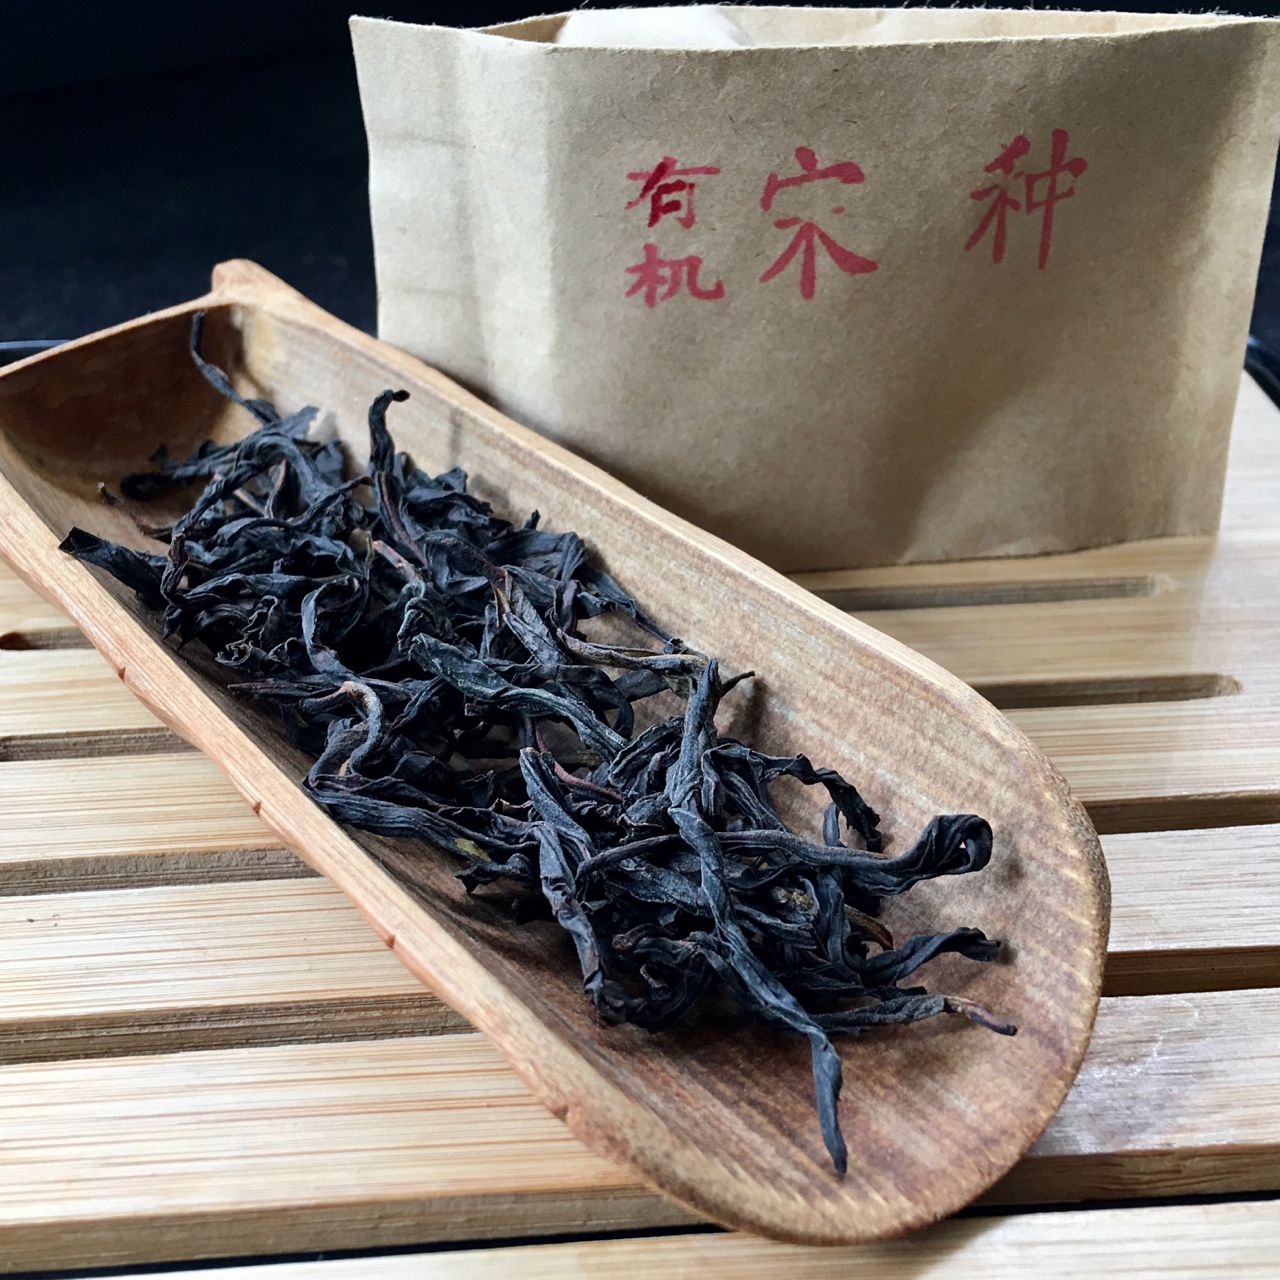 Yǒu Jī Sòng Zhǒng Fèng Huáng Dān Cóng Chá, 有机宋种凤凰单丛茶, Organic Song Zhong Feng Huang Dancong Tea